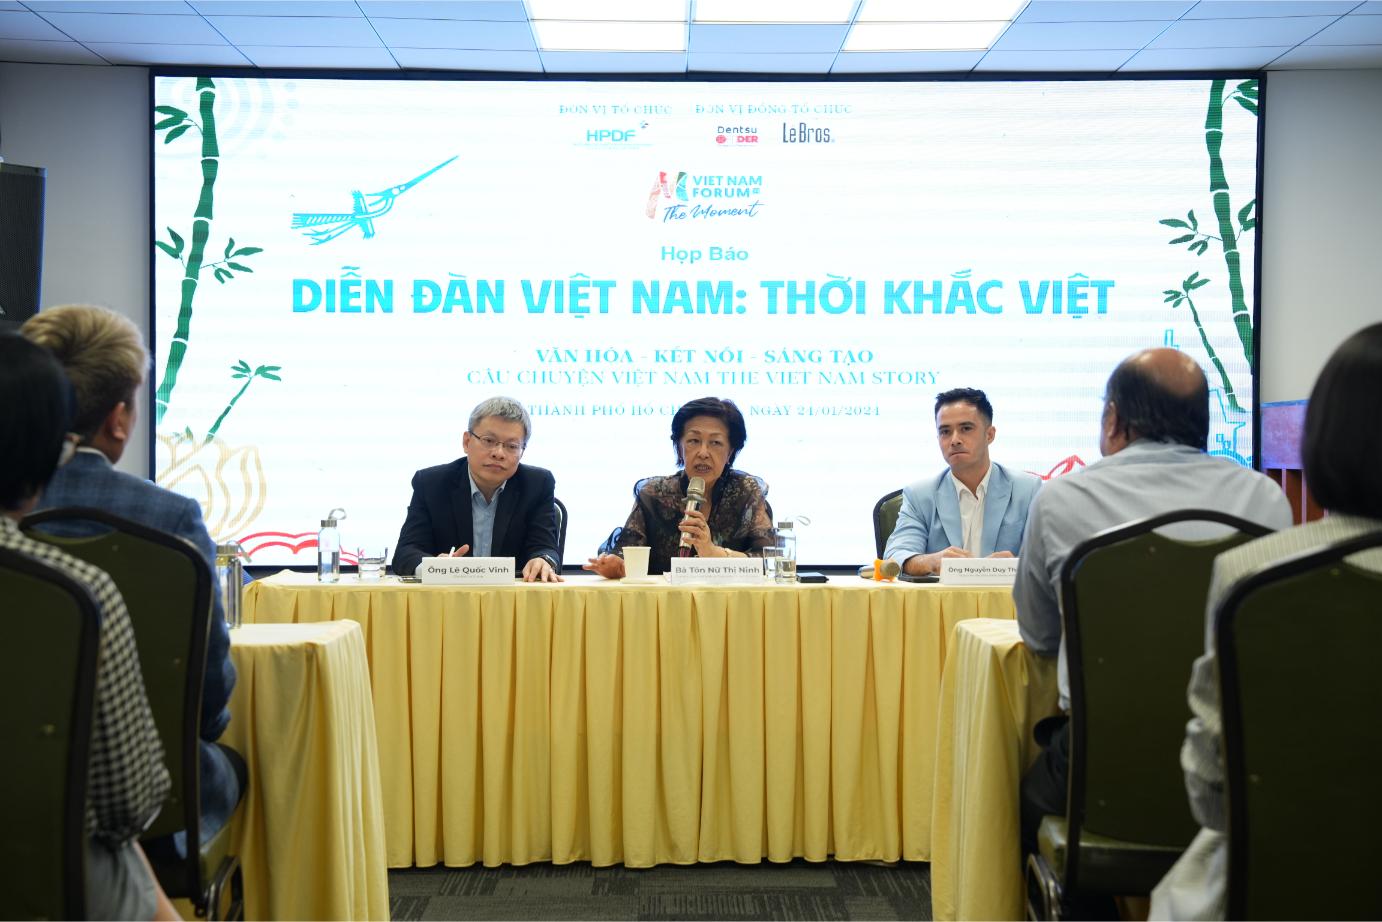 dien dan viet nam thoi khac viet 2 Diễn đàn Việt Nam: Thời khắc Việt chính thức khởi động